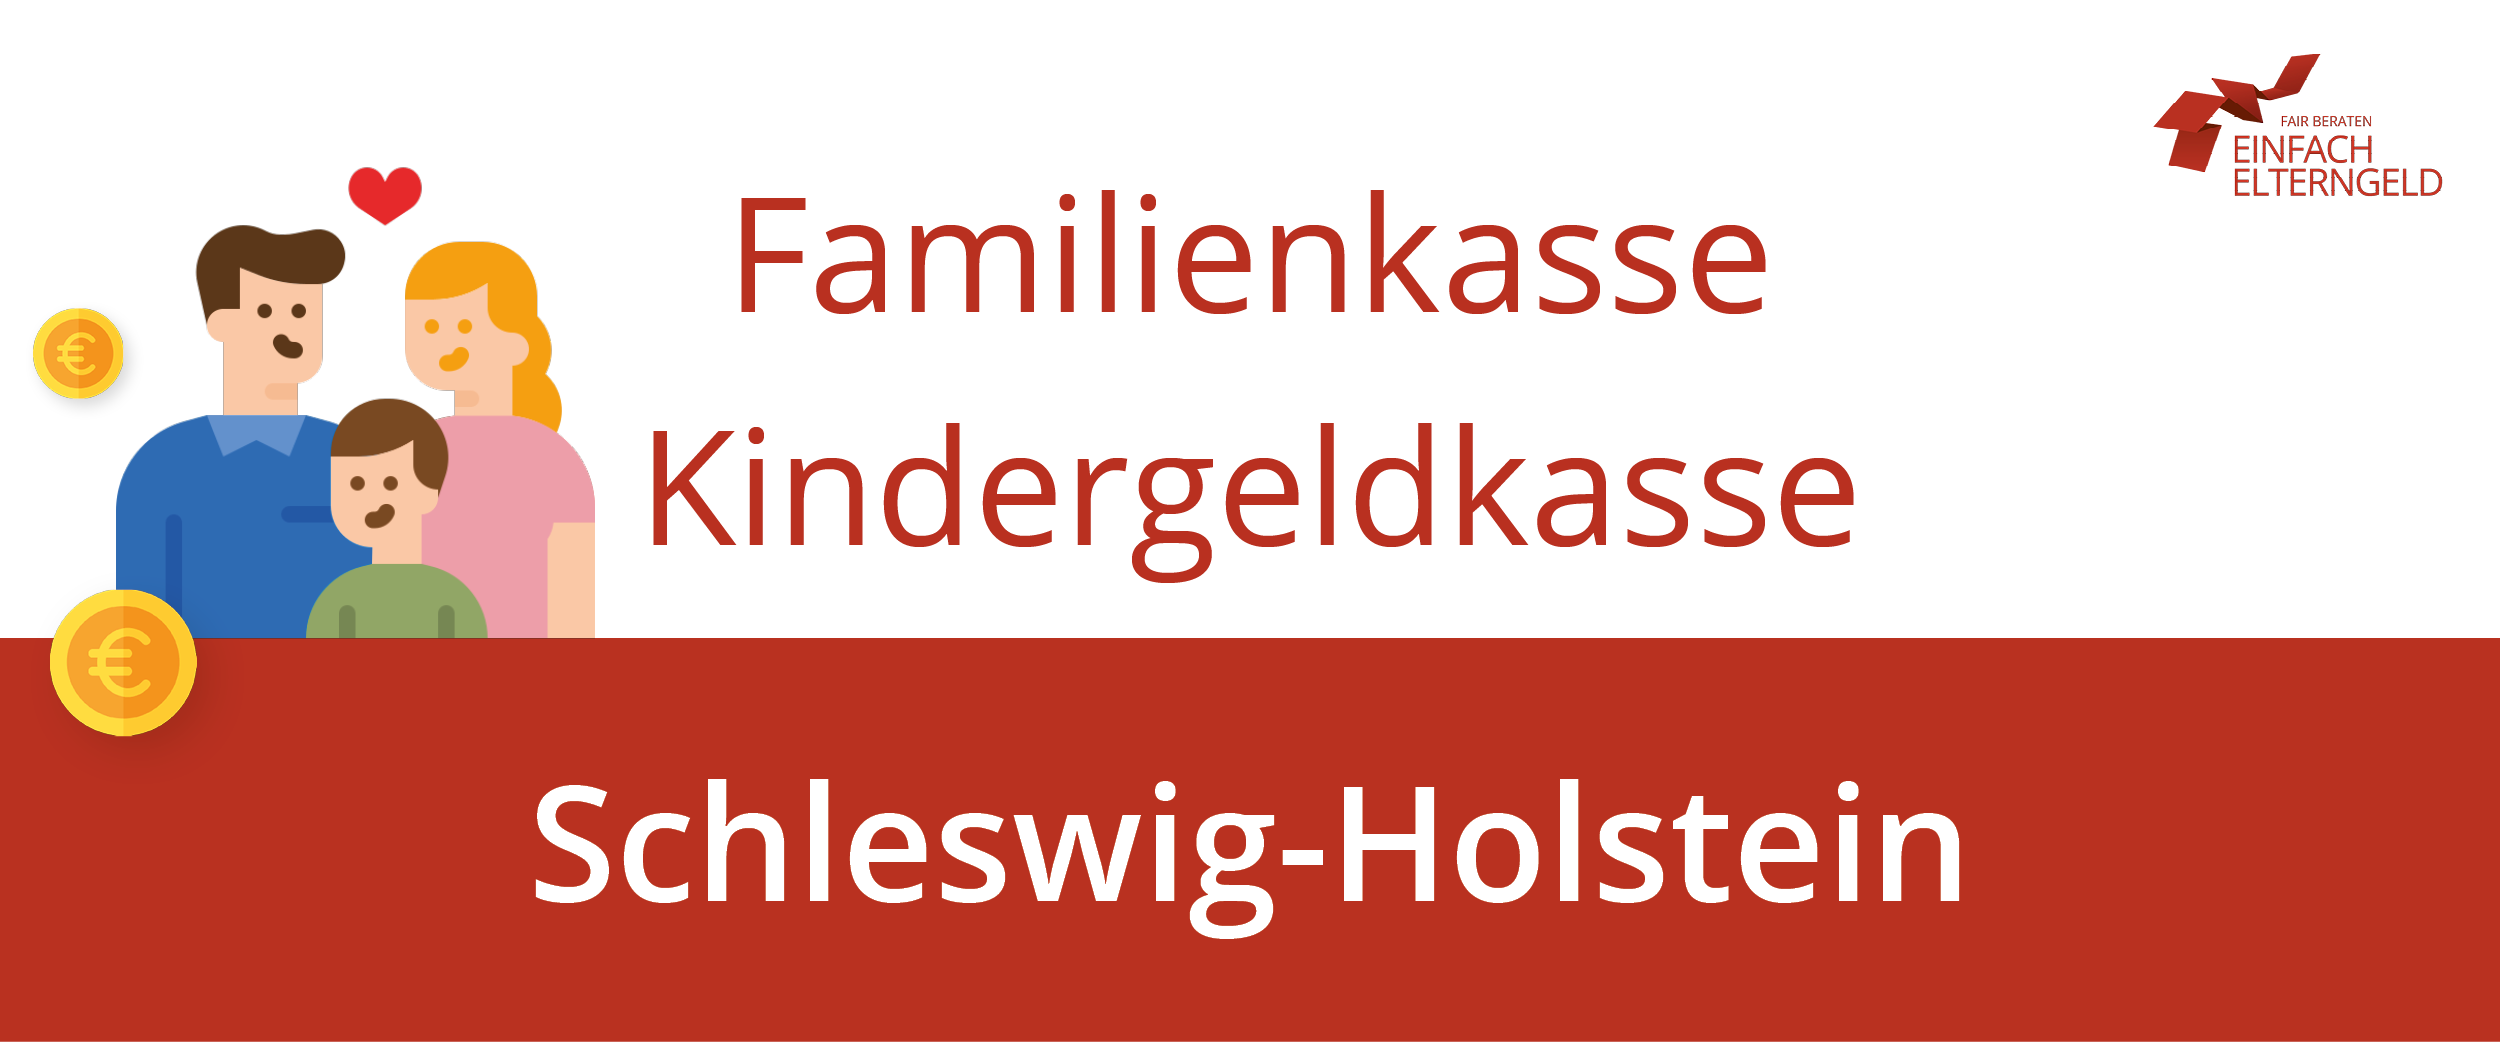 Die Familienkasse Schleswig-Holstein erreichen Sie unter diesen Adressen.